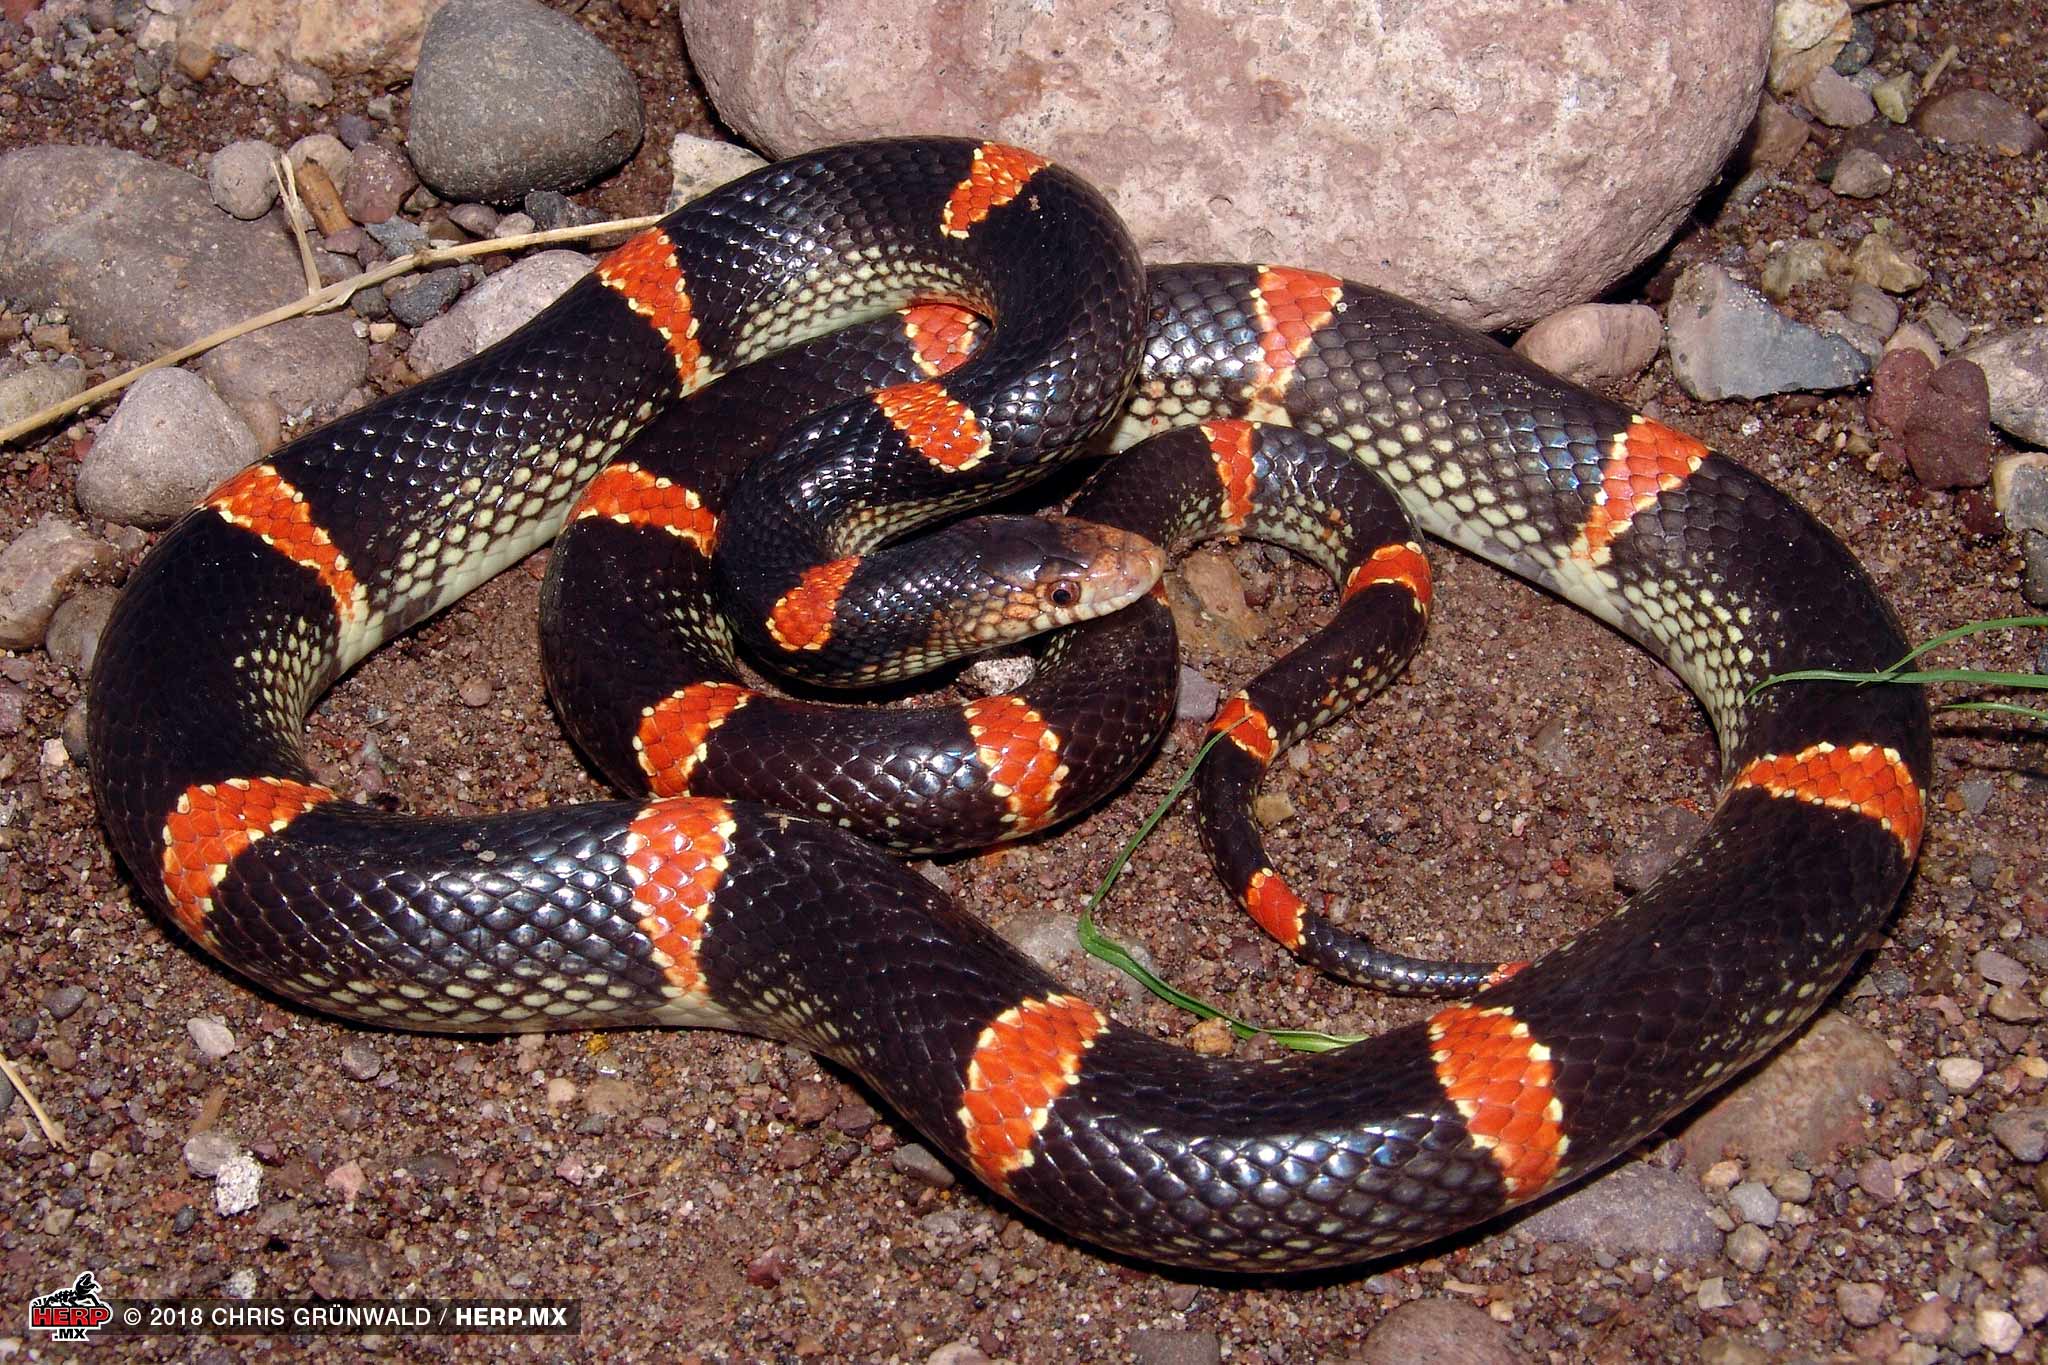 A Western Longnose Snake (<i>Rhinocheilus antonii</i>) from coastal Nayarit